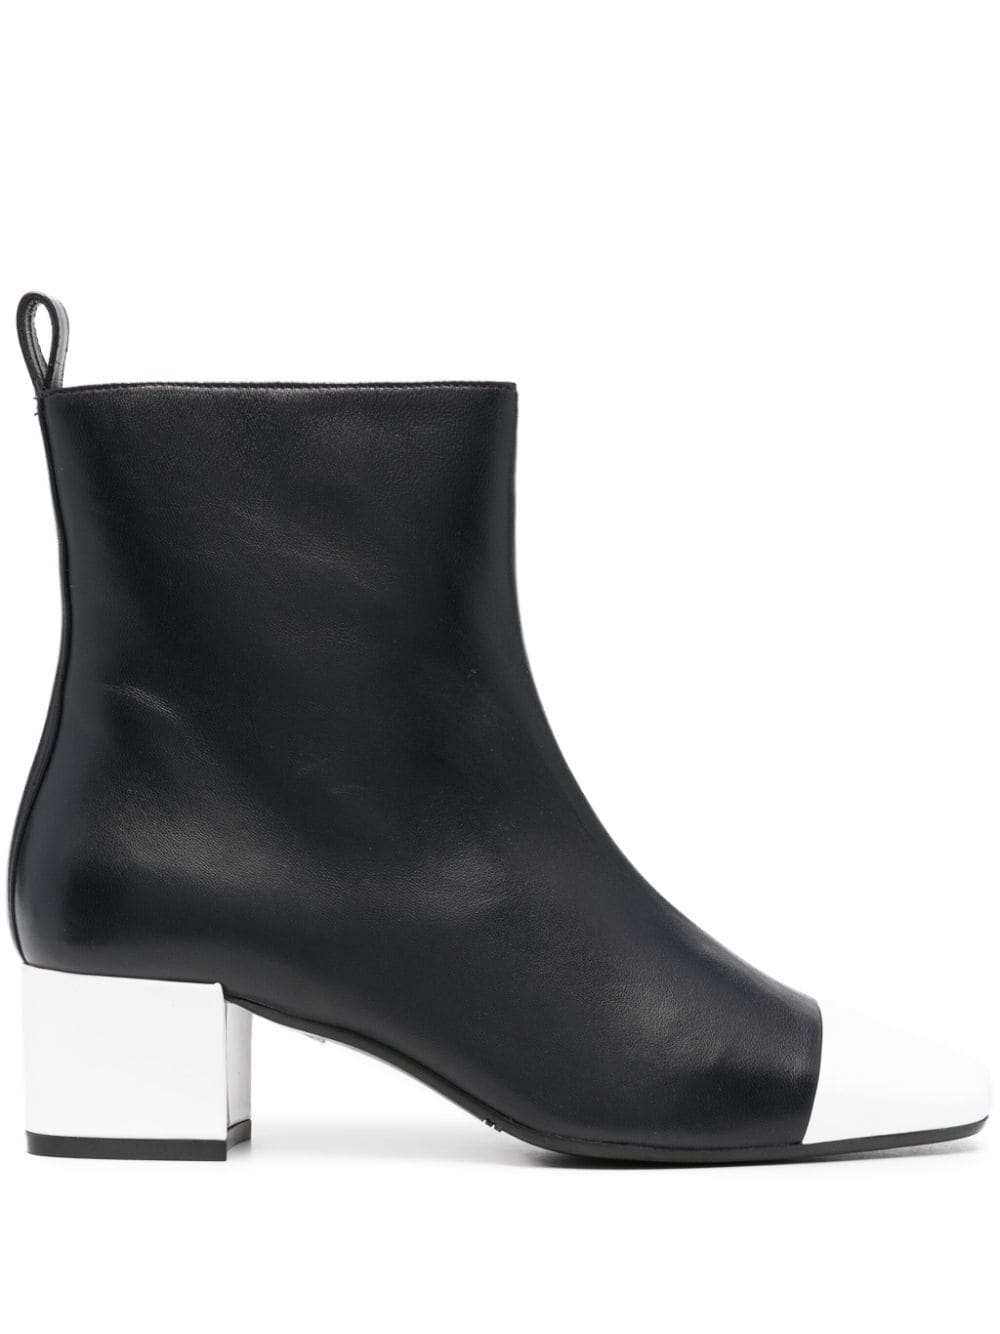 Carel Paris Estime 50mm leather boots - Nero